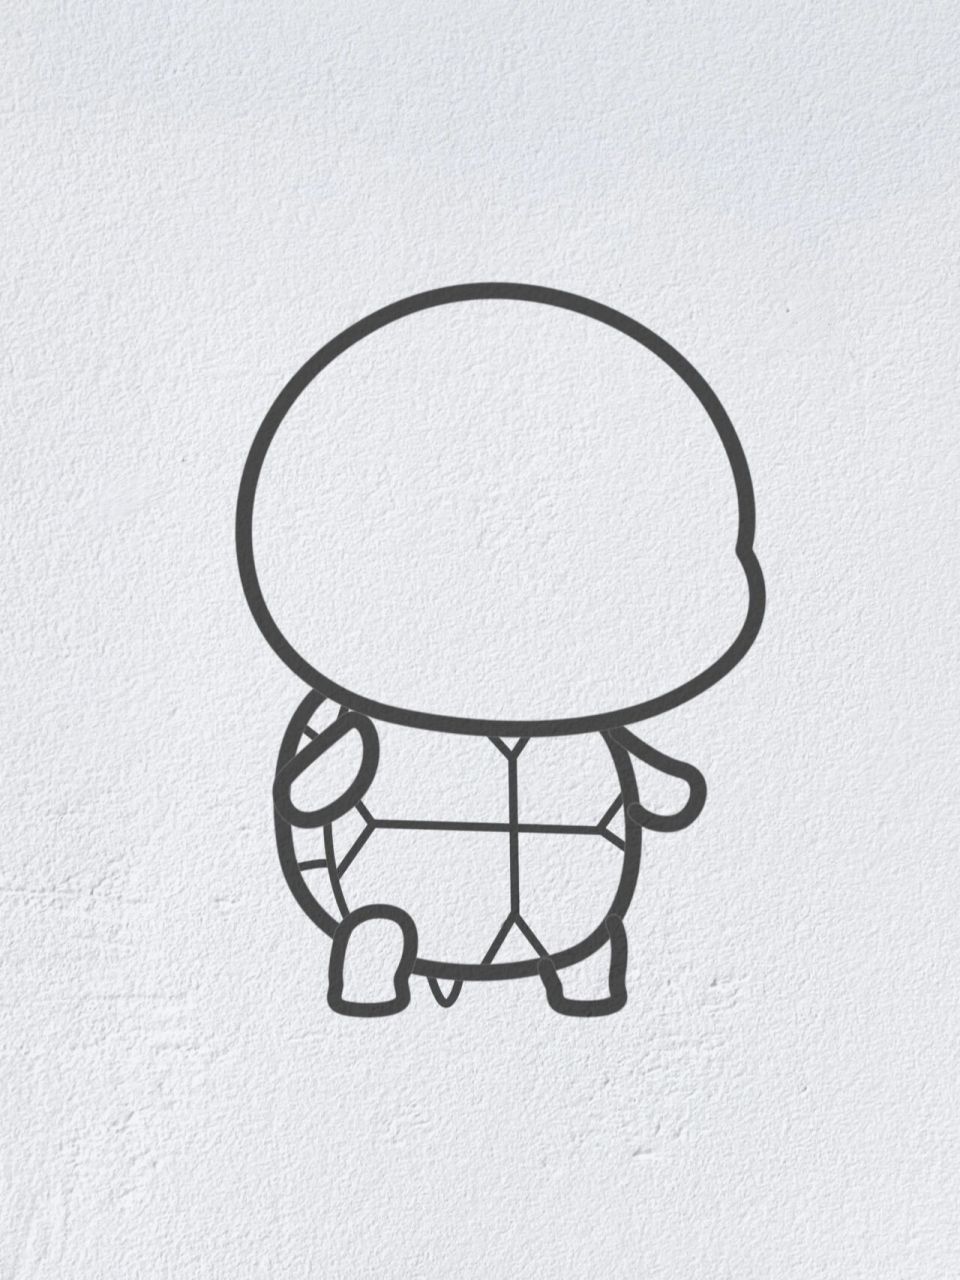 小乌龟简笔画 简单图片